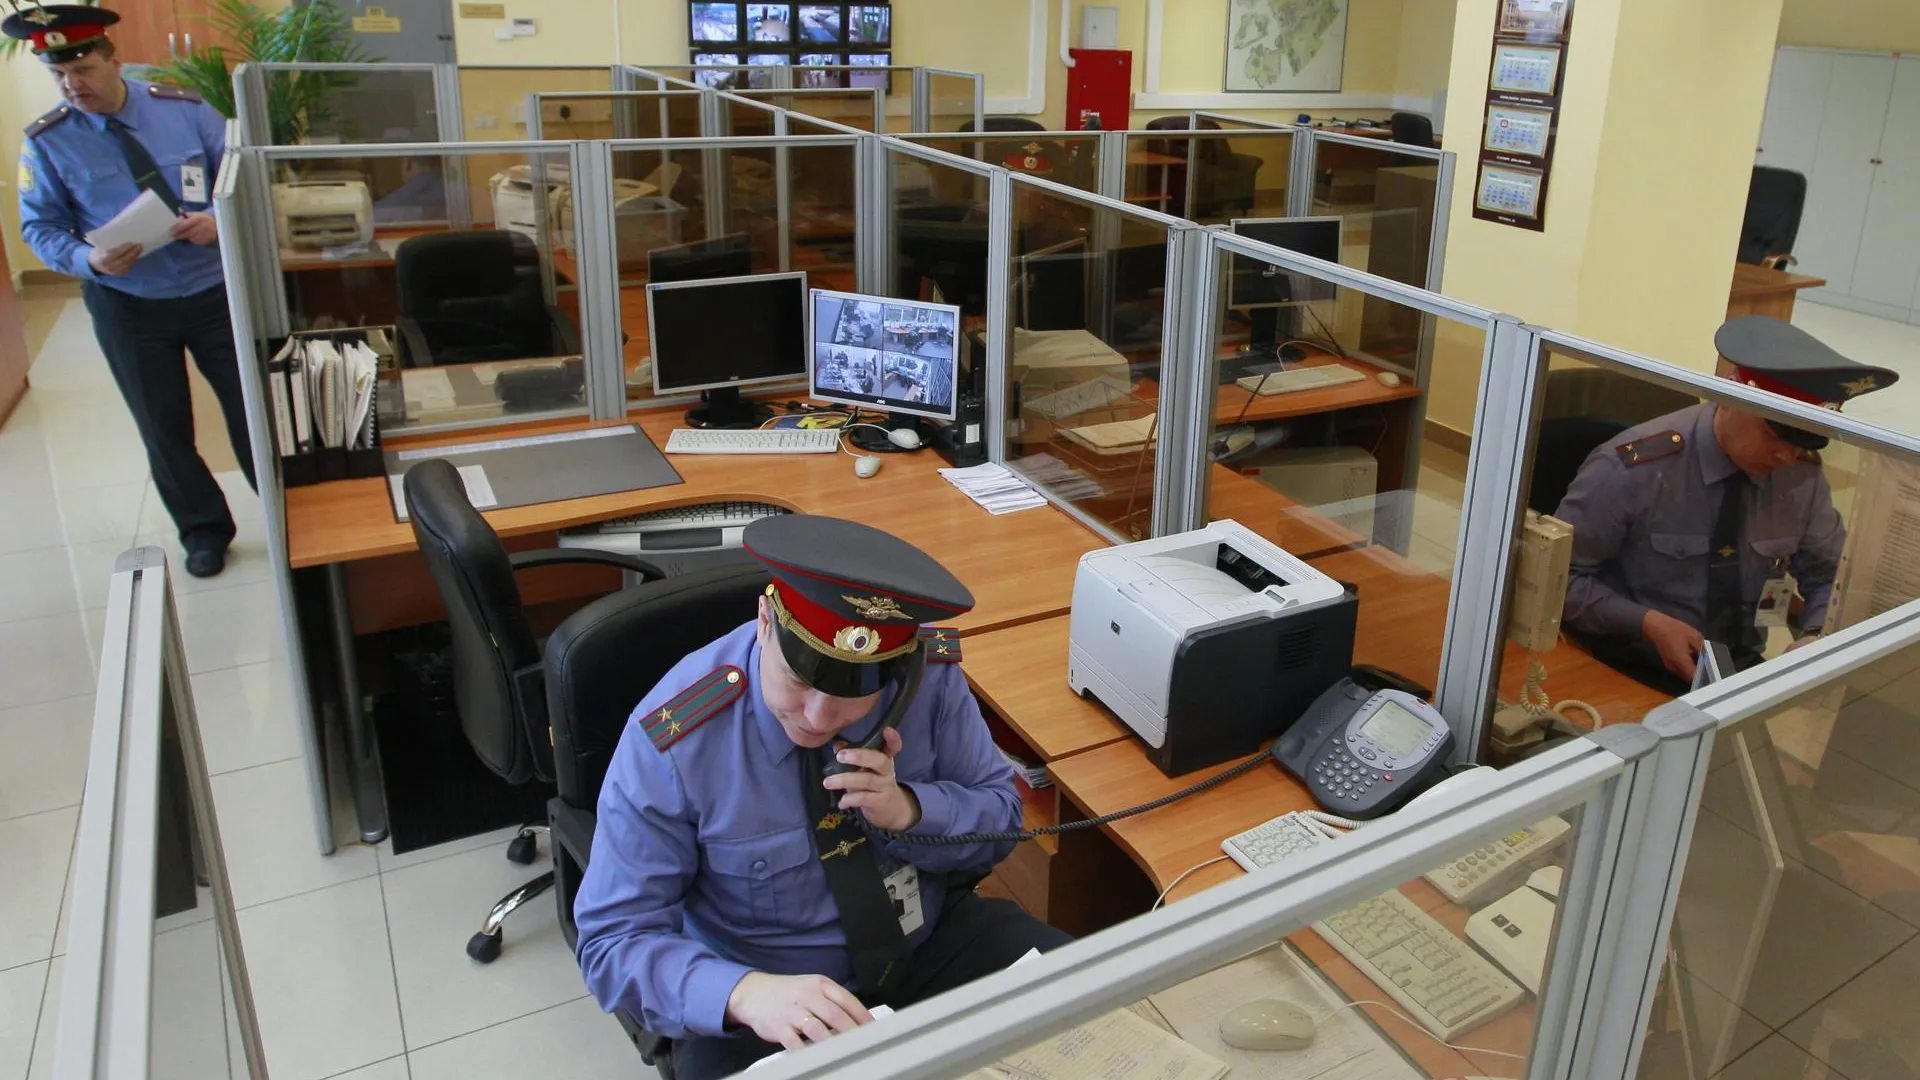 МВД проверит действия люберецких ДПС, после видео с жалобой на них